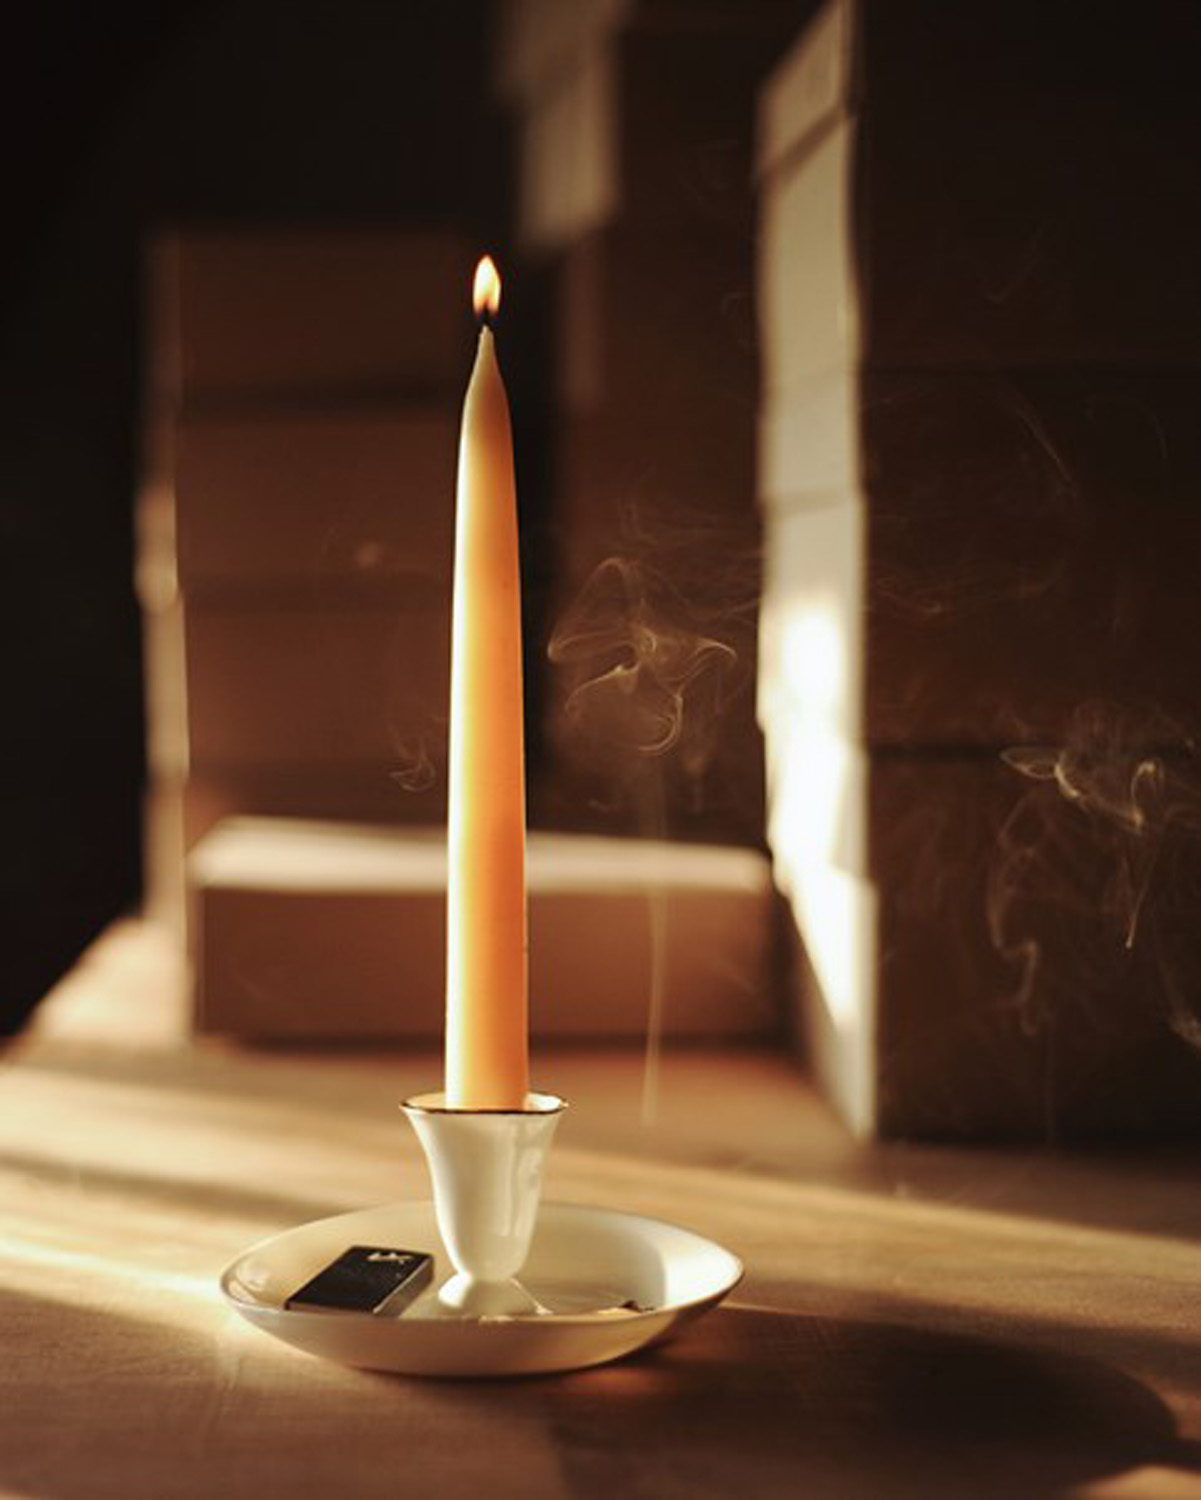 Candlestick by Feldspar - artisinal ceramics handmade in the UK